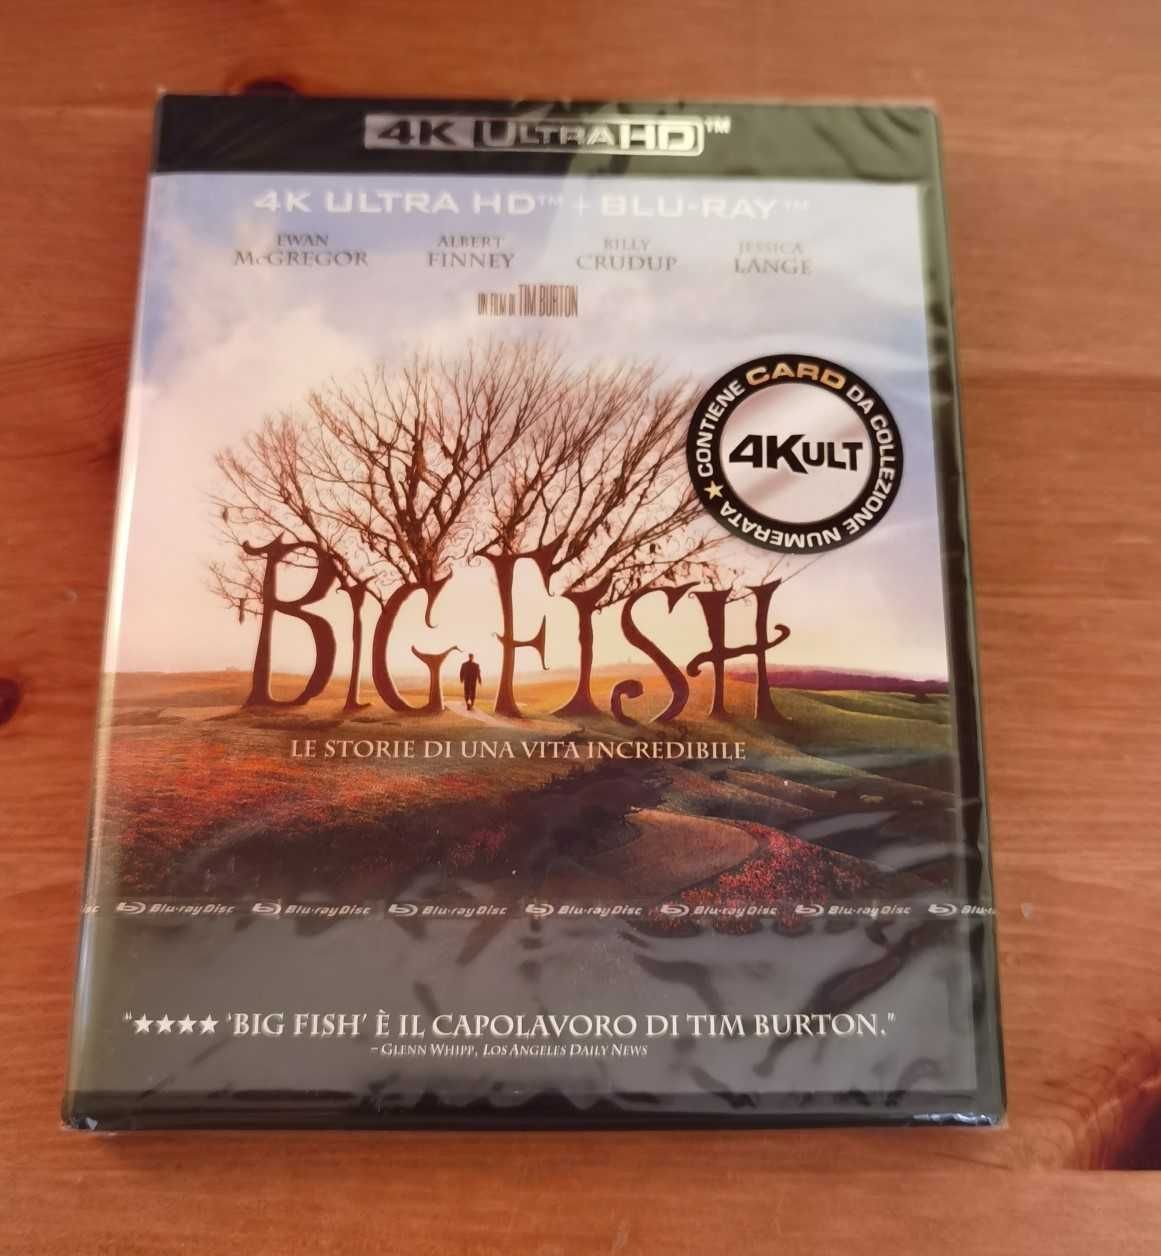 Duża ryba / Big Fish Blu-ray 4K UHD Lektor PL / Napisy PL + B-R